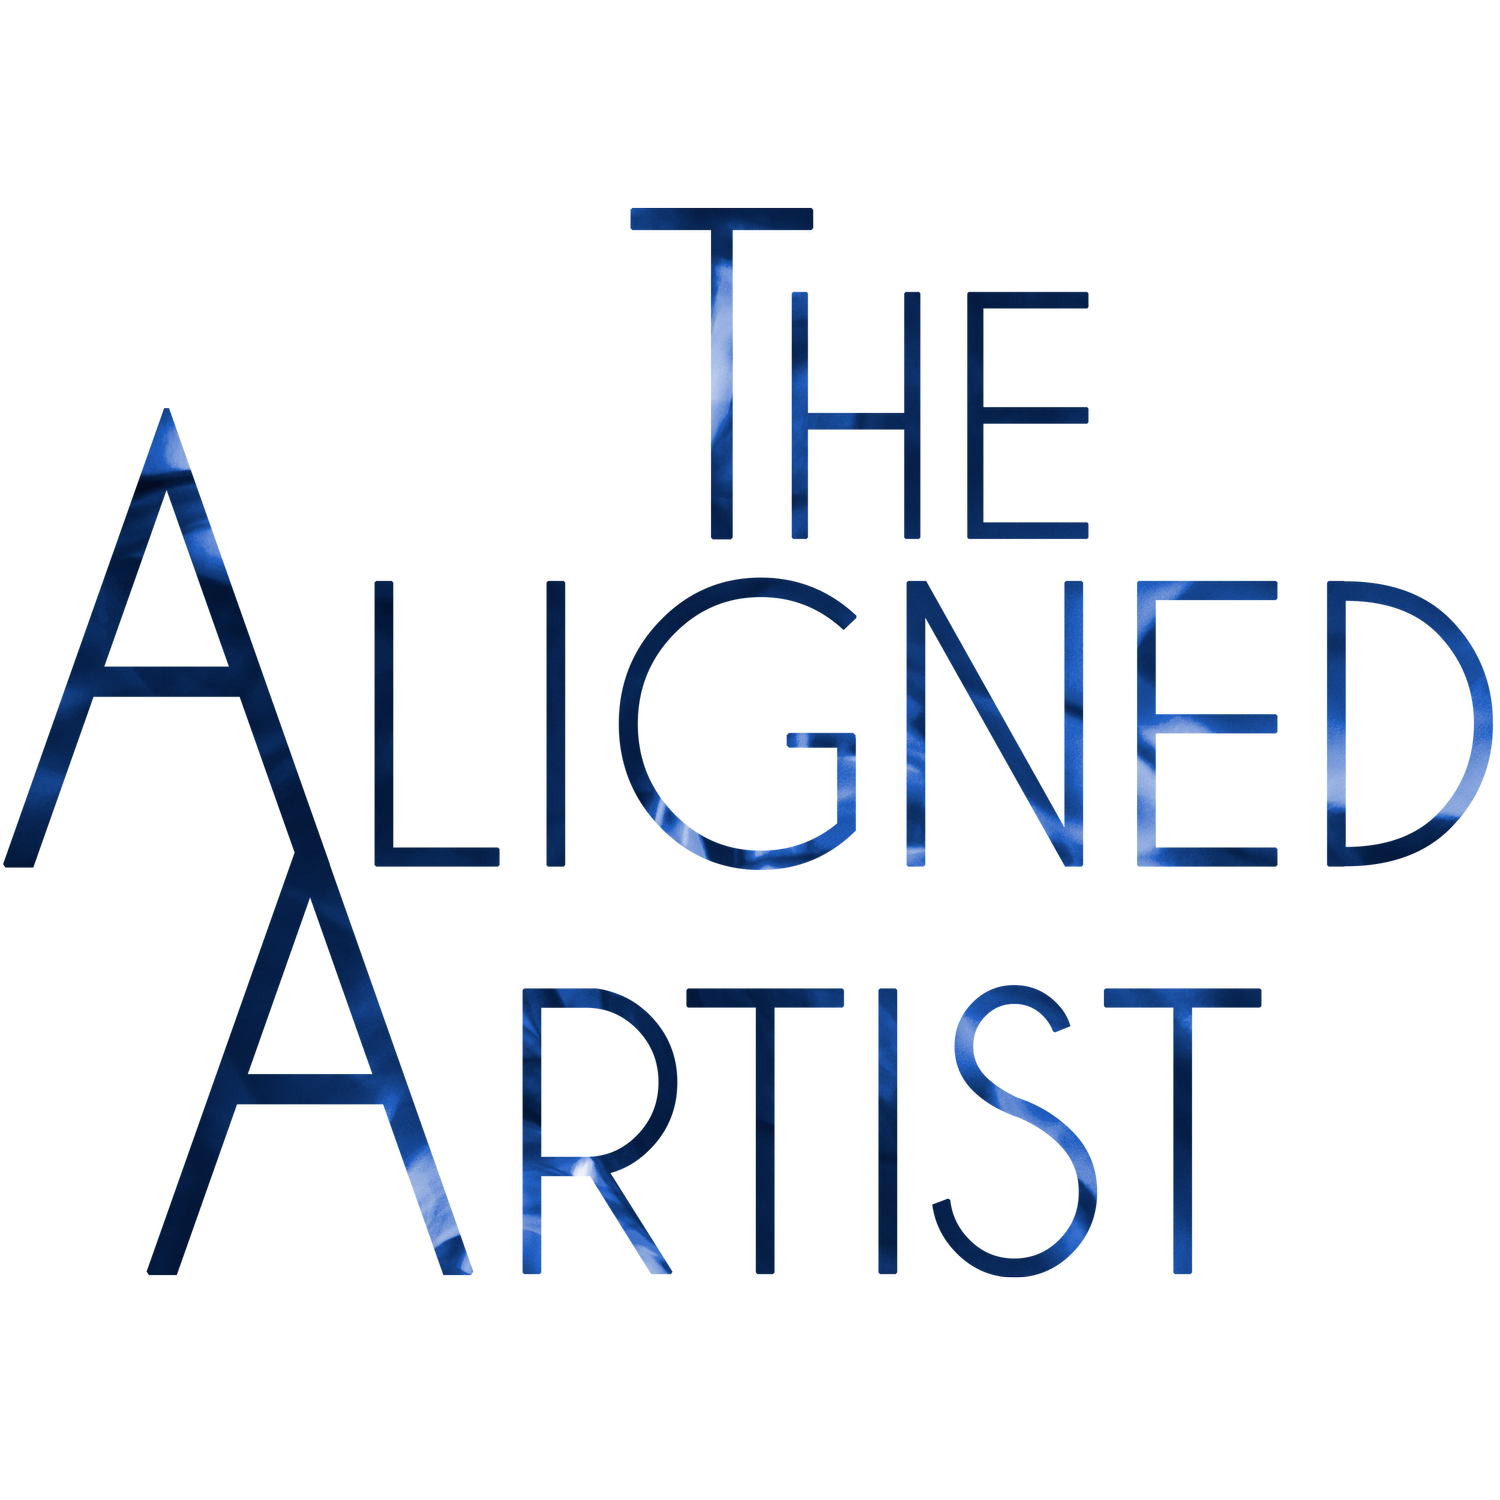 The Aligned Artist